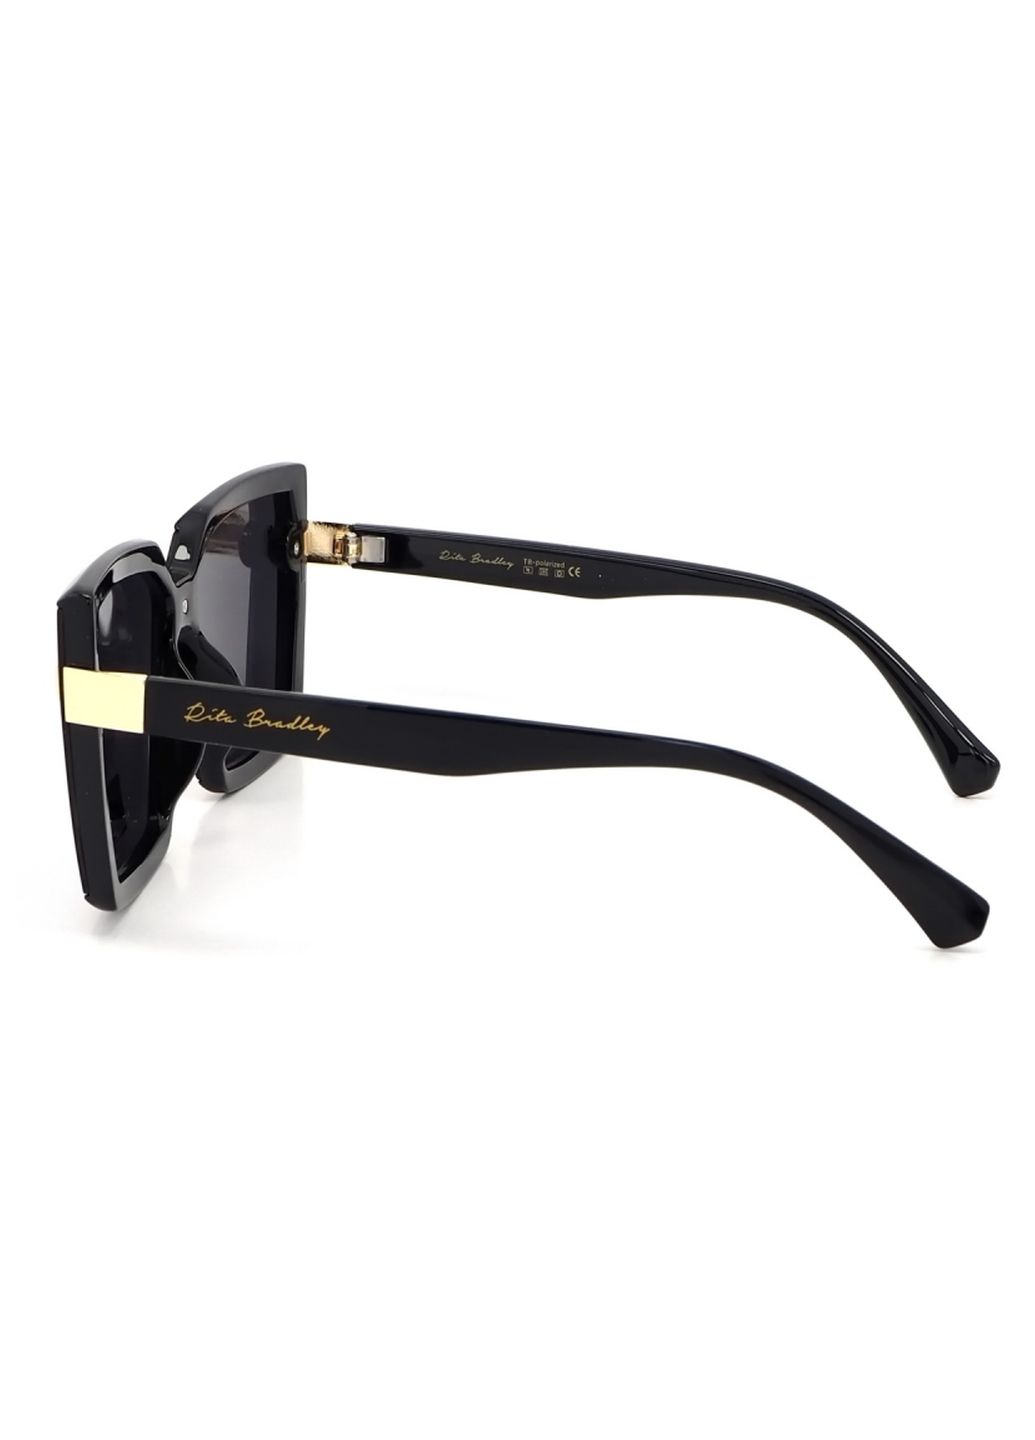 Купить Женские солнцезащитные очки Rita Bradley с поляризацией RB723 112037 в интернет-магазине